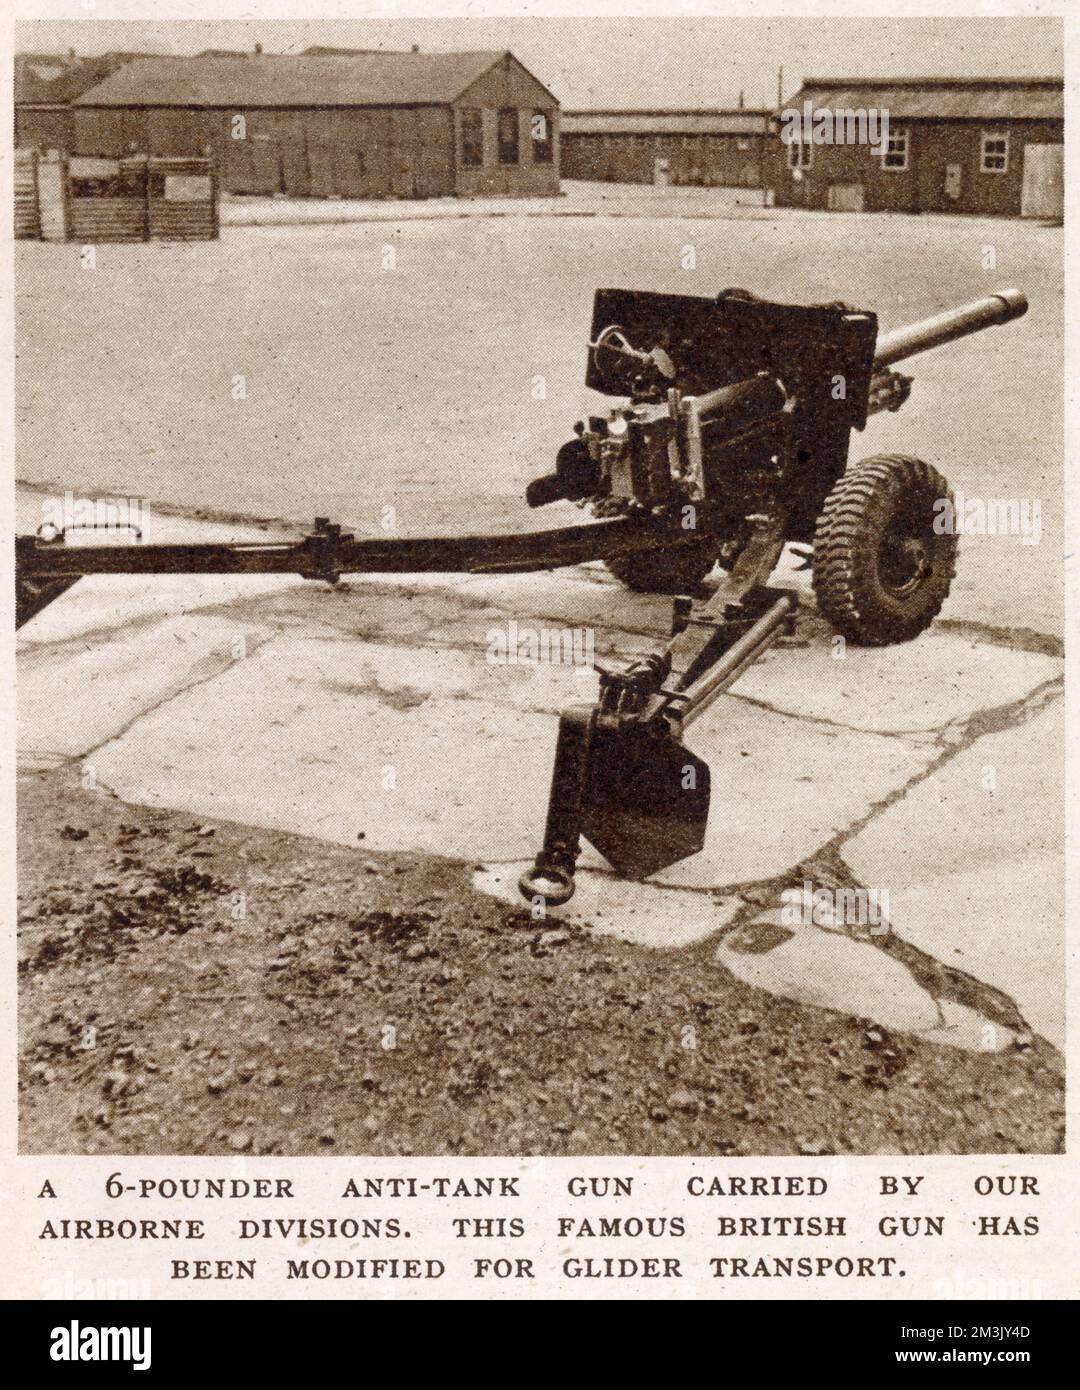 Arme anti-char britannique de 6 lieurs, sur un terrain de parade de l'armée britannique, 1944. Ce type d'arme a été largement utilisé par l'armée britannique, y compris par la première division aéroportée britannique à Arnhem, lors de l'opération 'Market Garden', septembre 1944. Banque D'Images